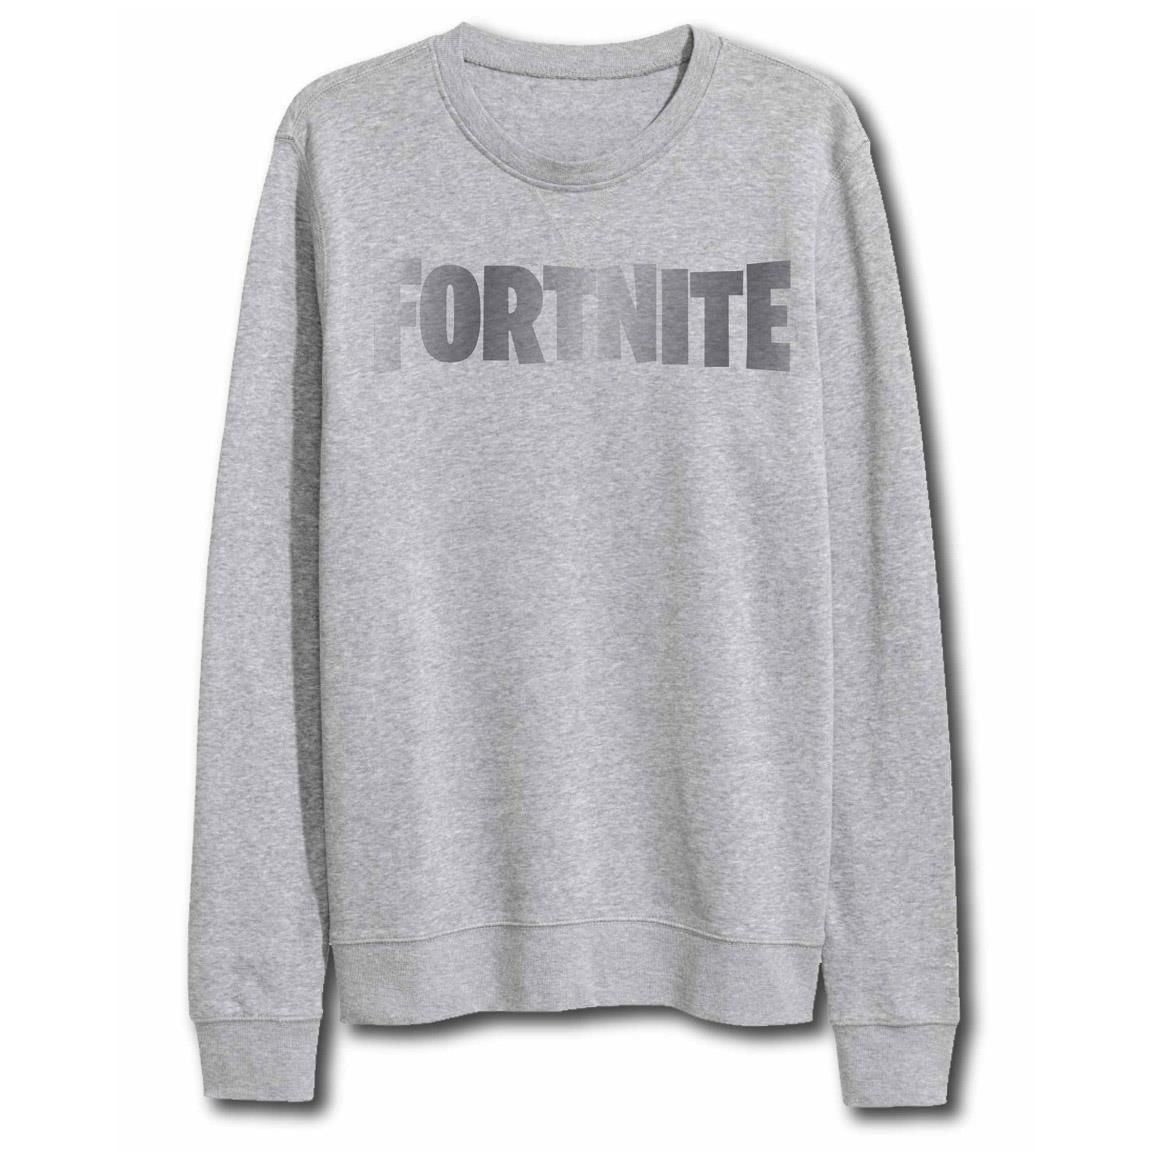 Fortnite - Grey Logo Sweatshirt 14Y